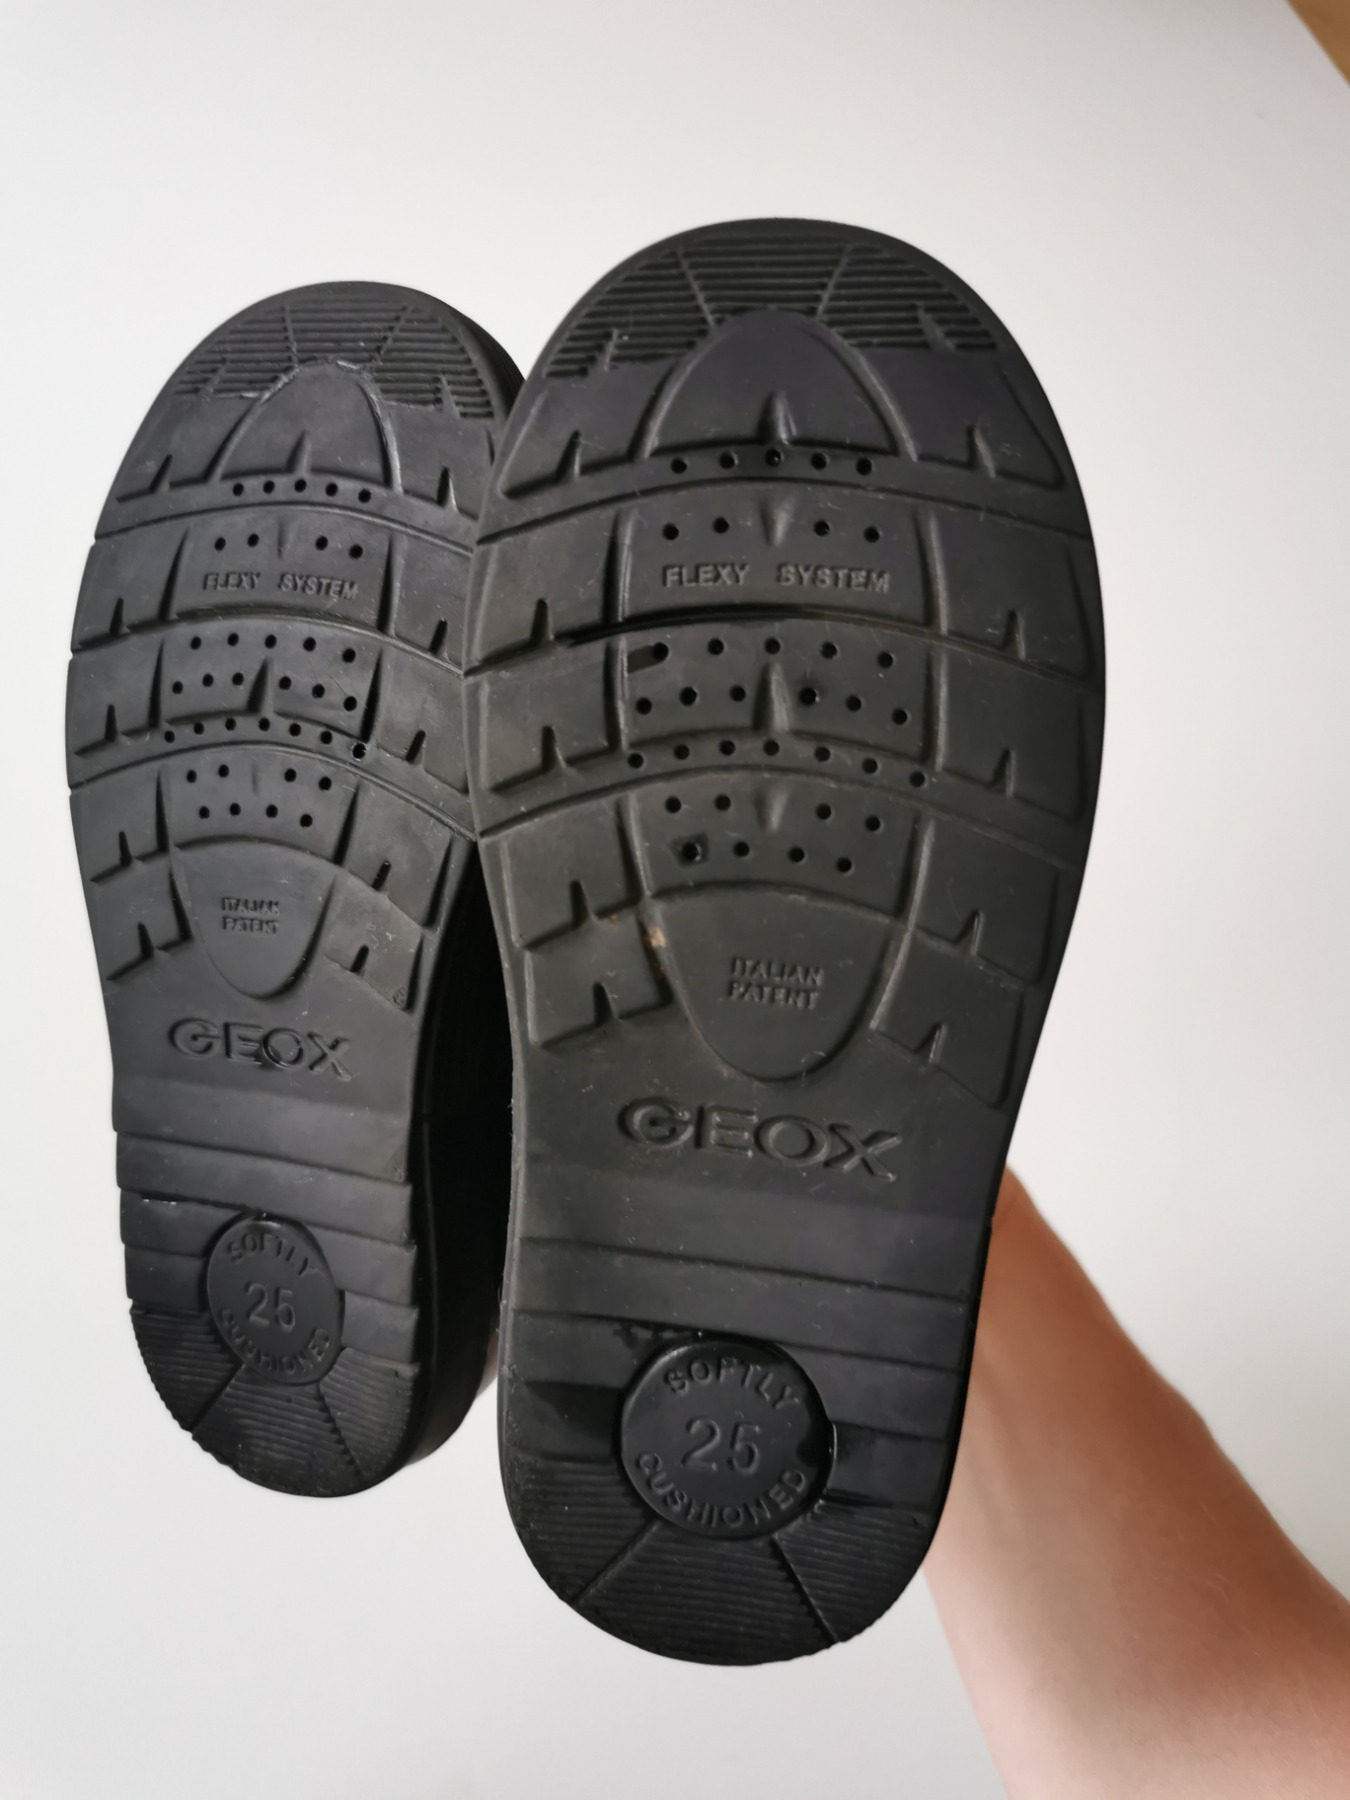 Boots waterproof - Größe 25 6